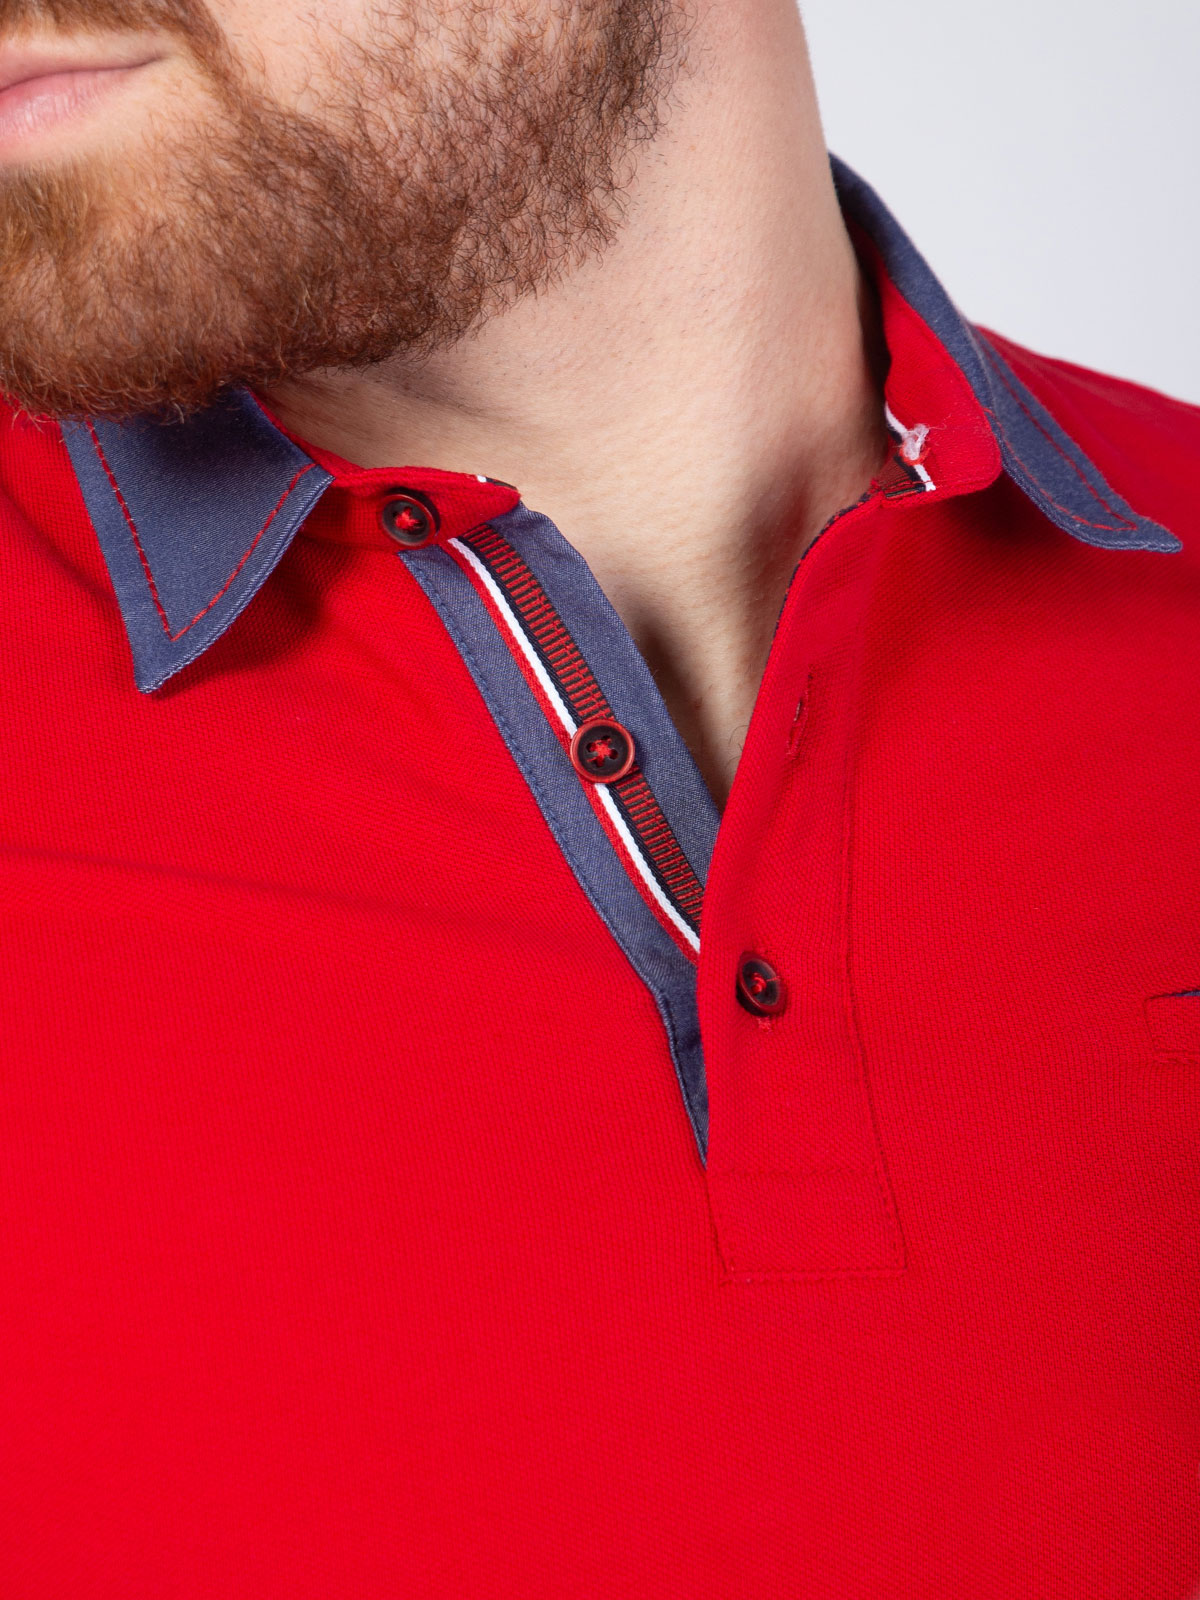  κόκκινη μπλούζα με τζιν γιακά  - 93402 € 25.87 img2